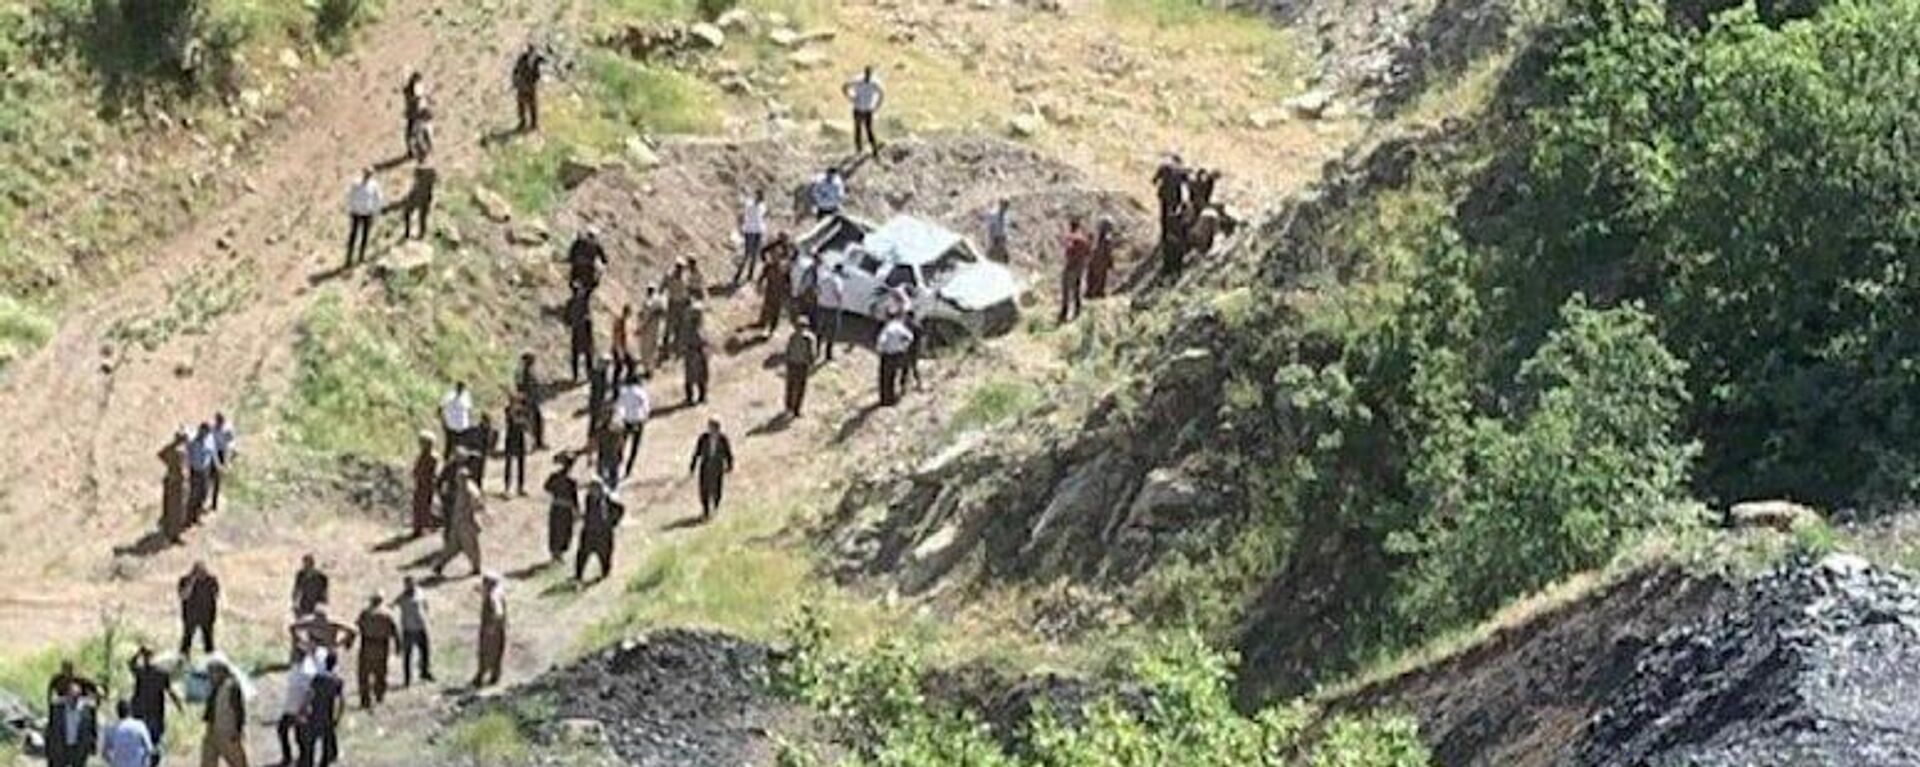 Şırnak'ın Uludere ilçesi Yemişli köyünde meydana gelen trafik kazasında 5 kişi hayatını kaybetti. - Sputnik Türkiye, 1920, 02.06.2022